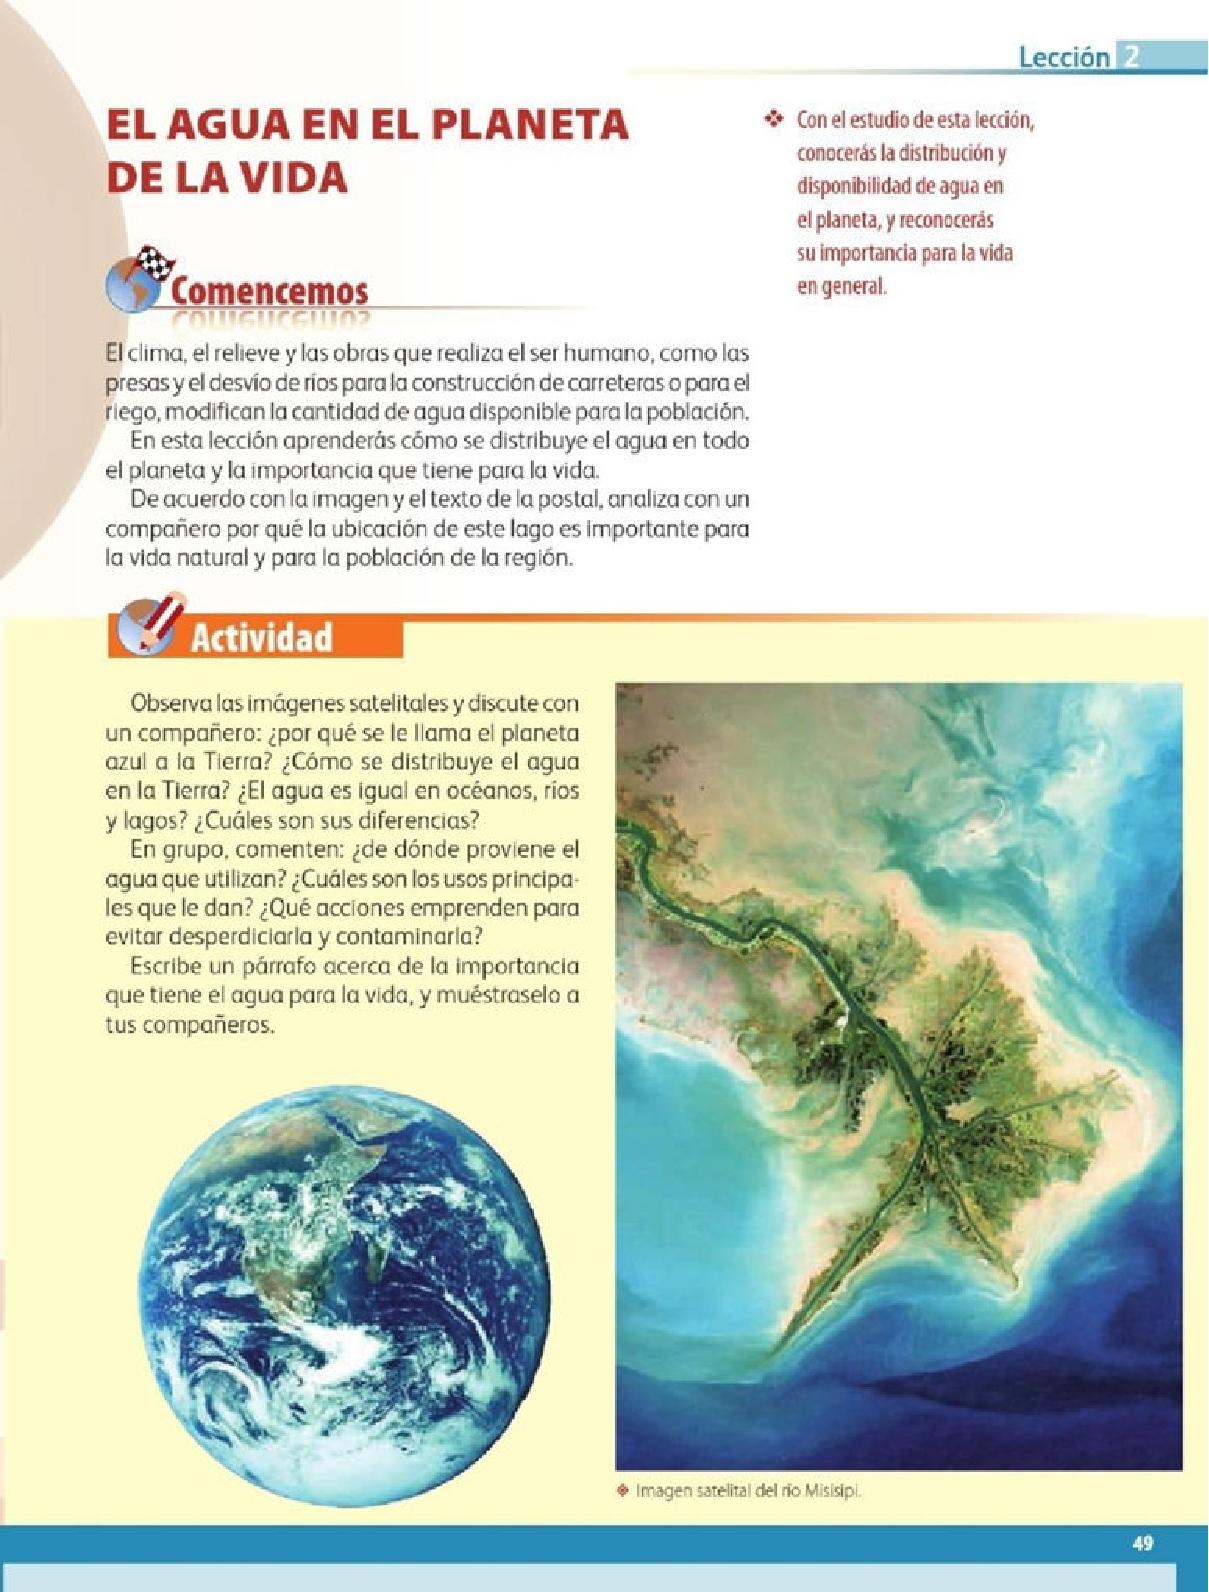 Paco El Chato Atlas De Sexto Geografia Del Mundo | Libro Gratis